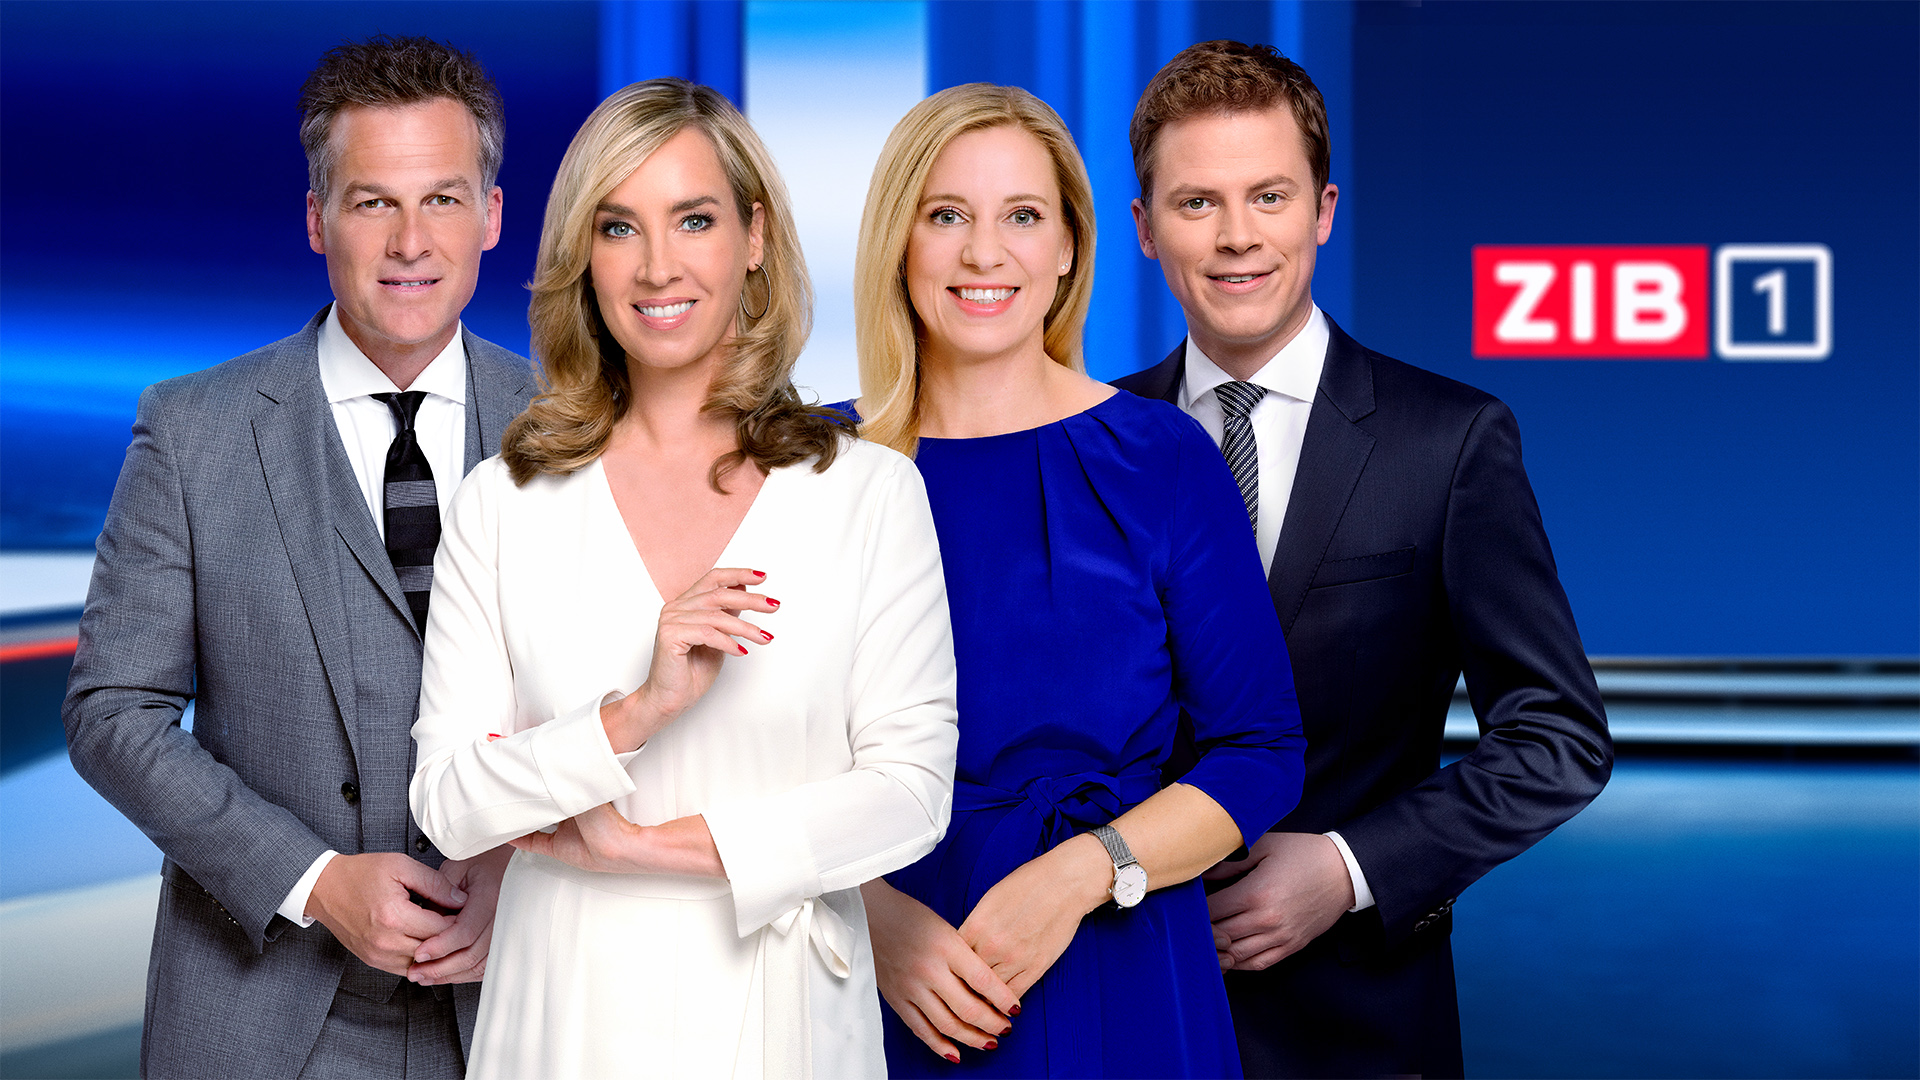 ORF-TVthek neu: Relaunch der erfolgreichsten österreichischen Videoplattform - BIZEPS